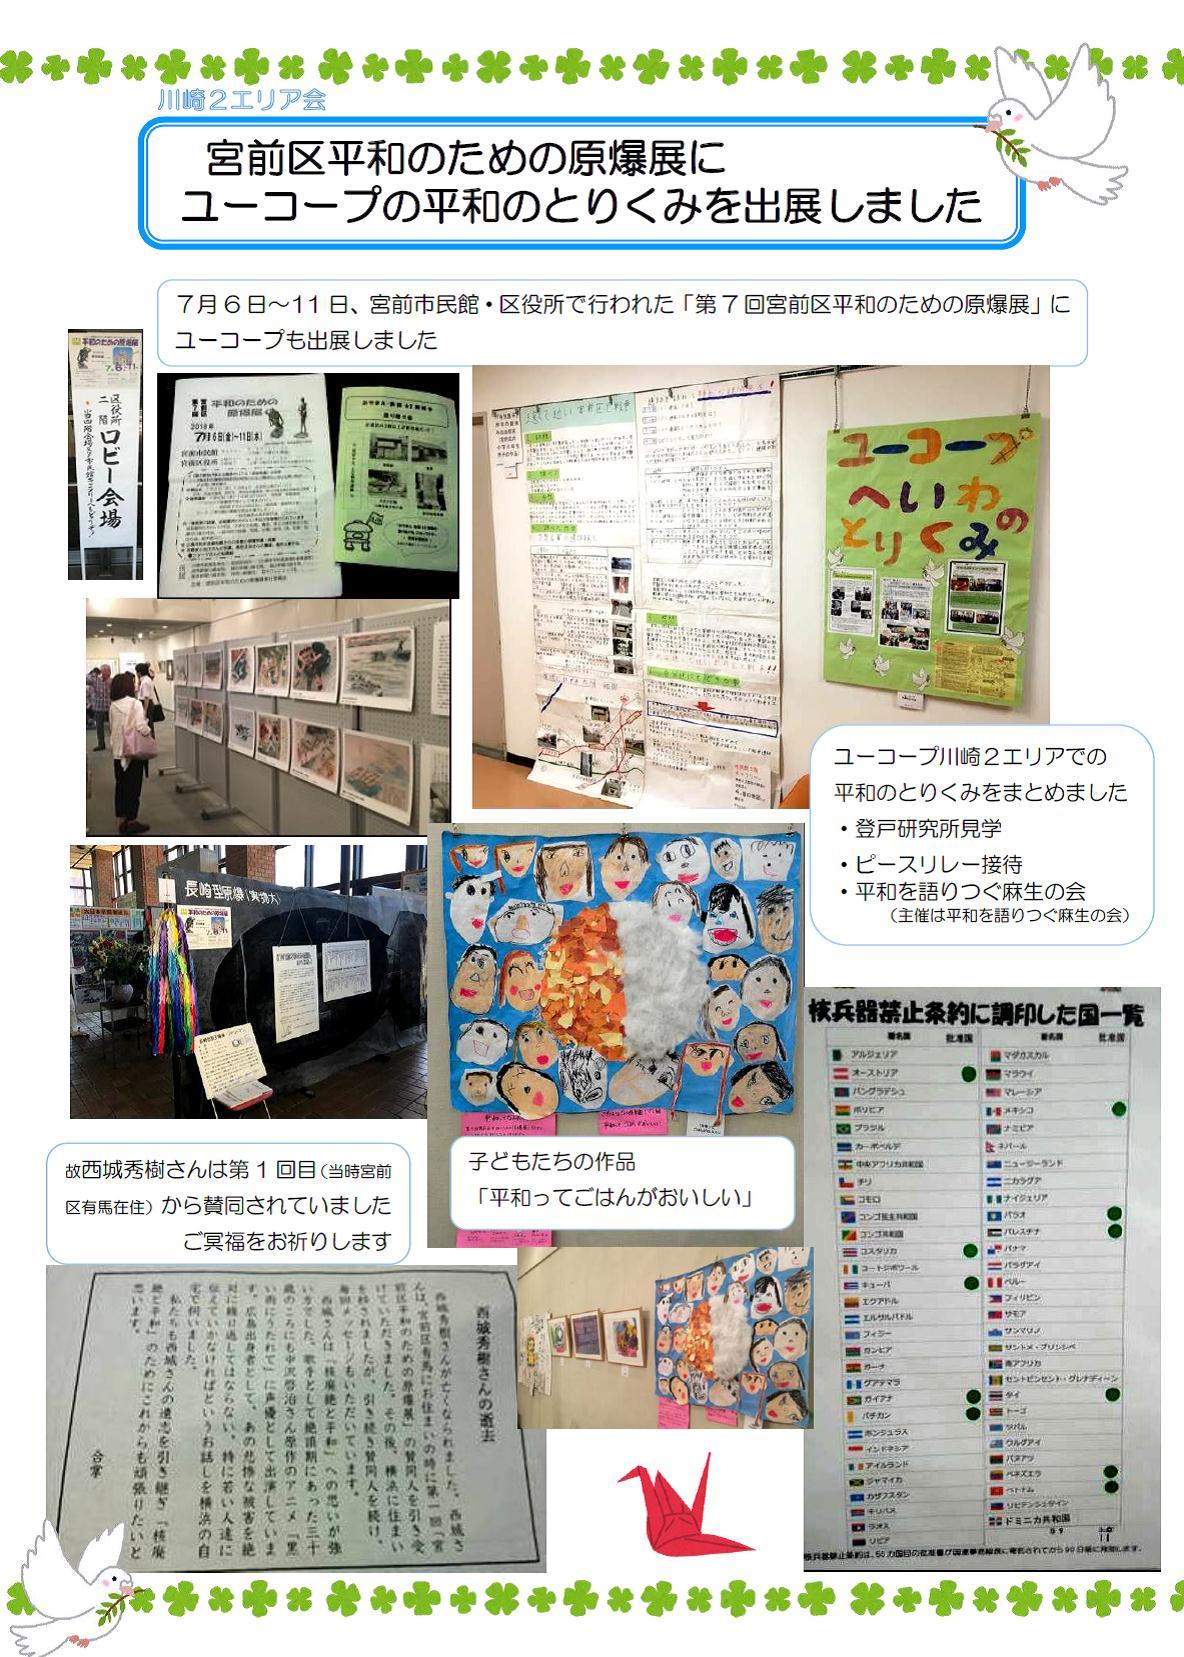 http://kanagawa.ucoop.or.jp/hiroba/areanews/files/18kawasaki2miyamaeheiwa.jpg